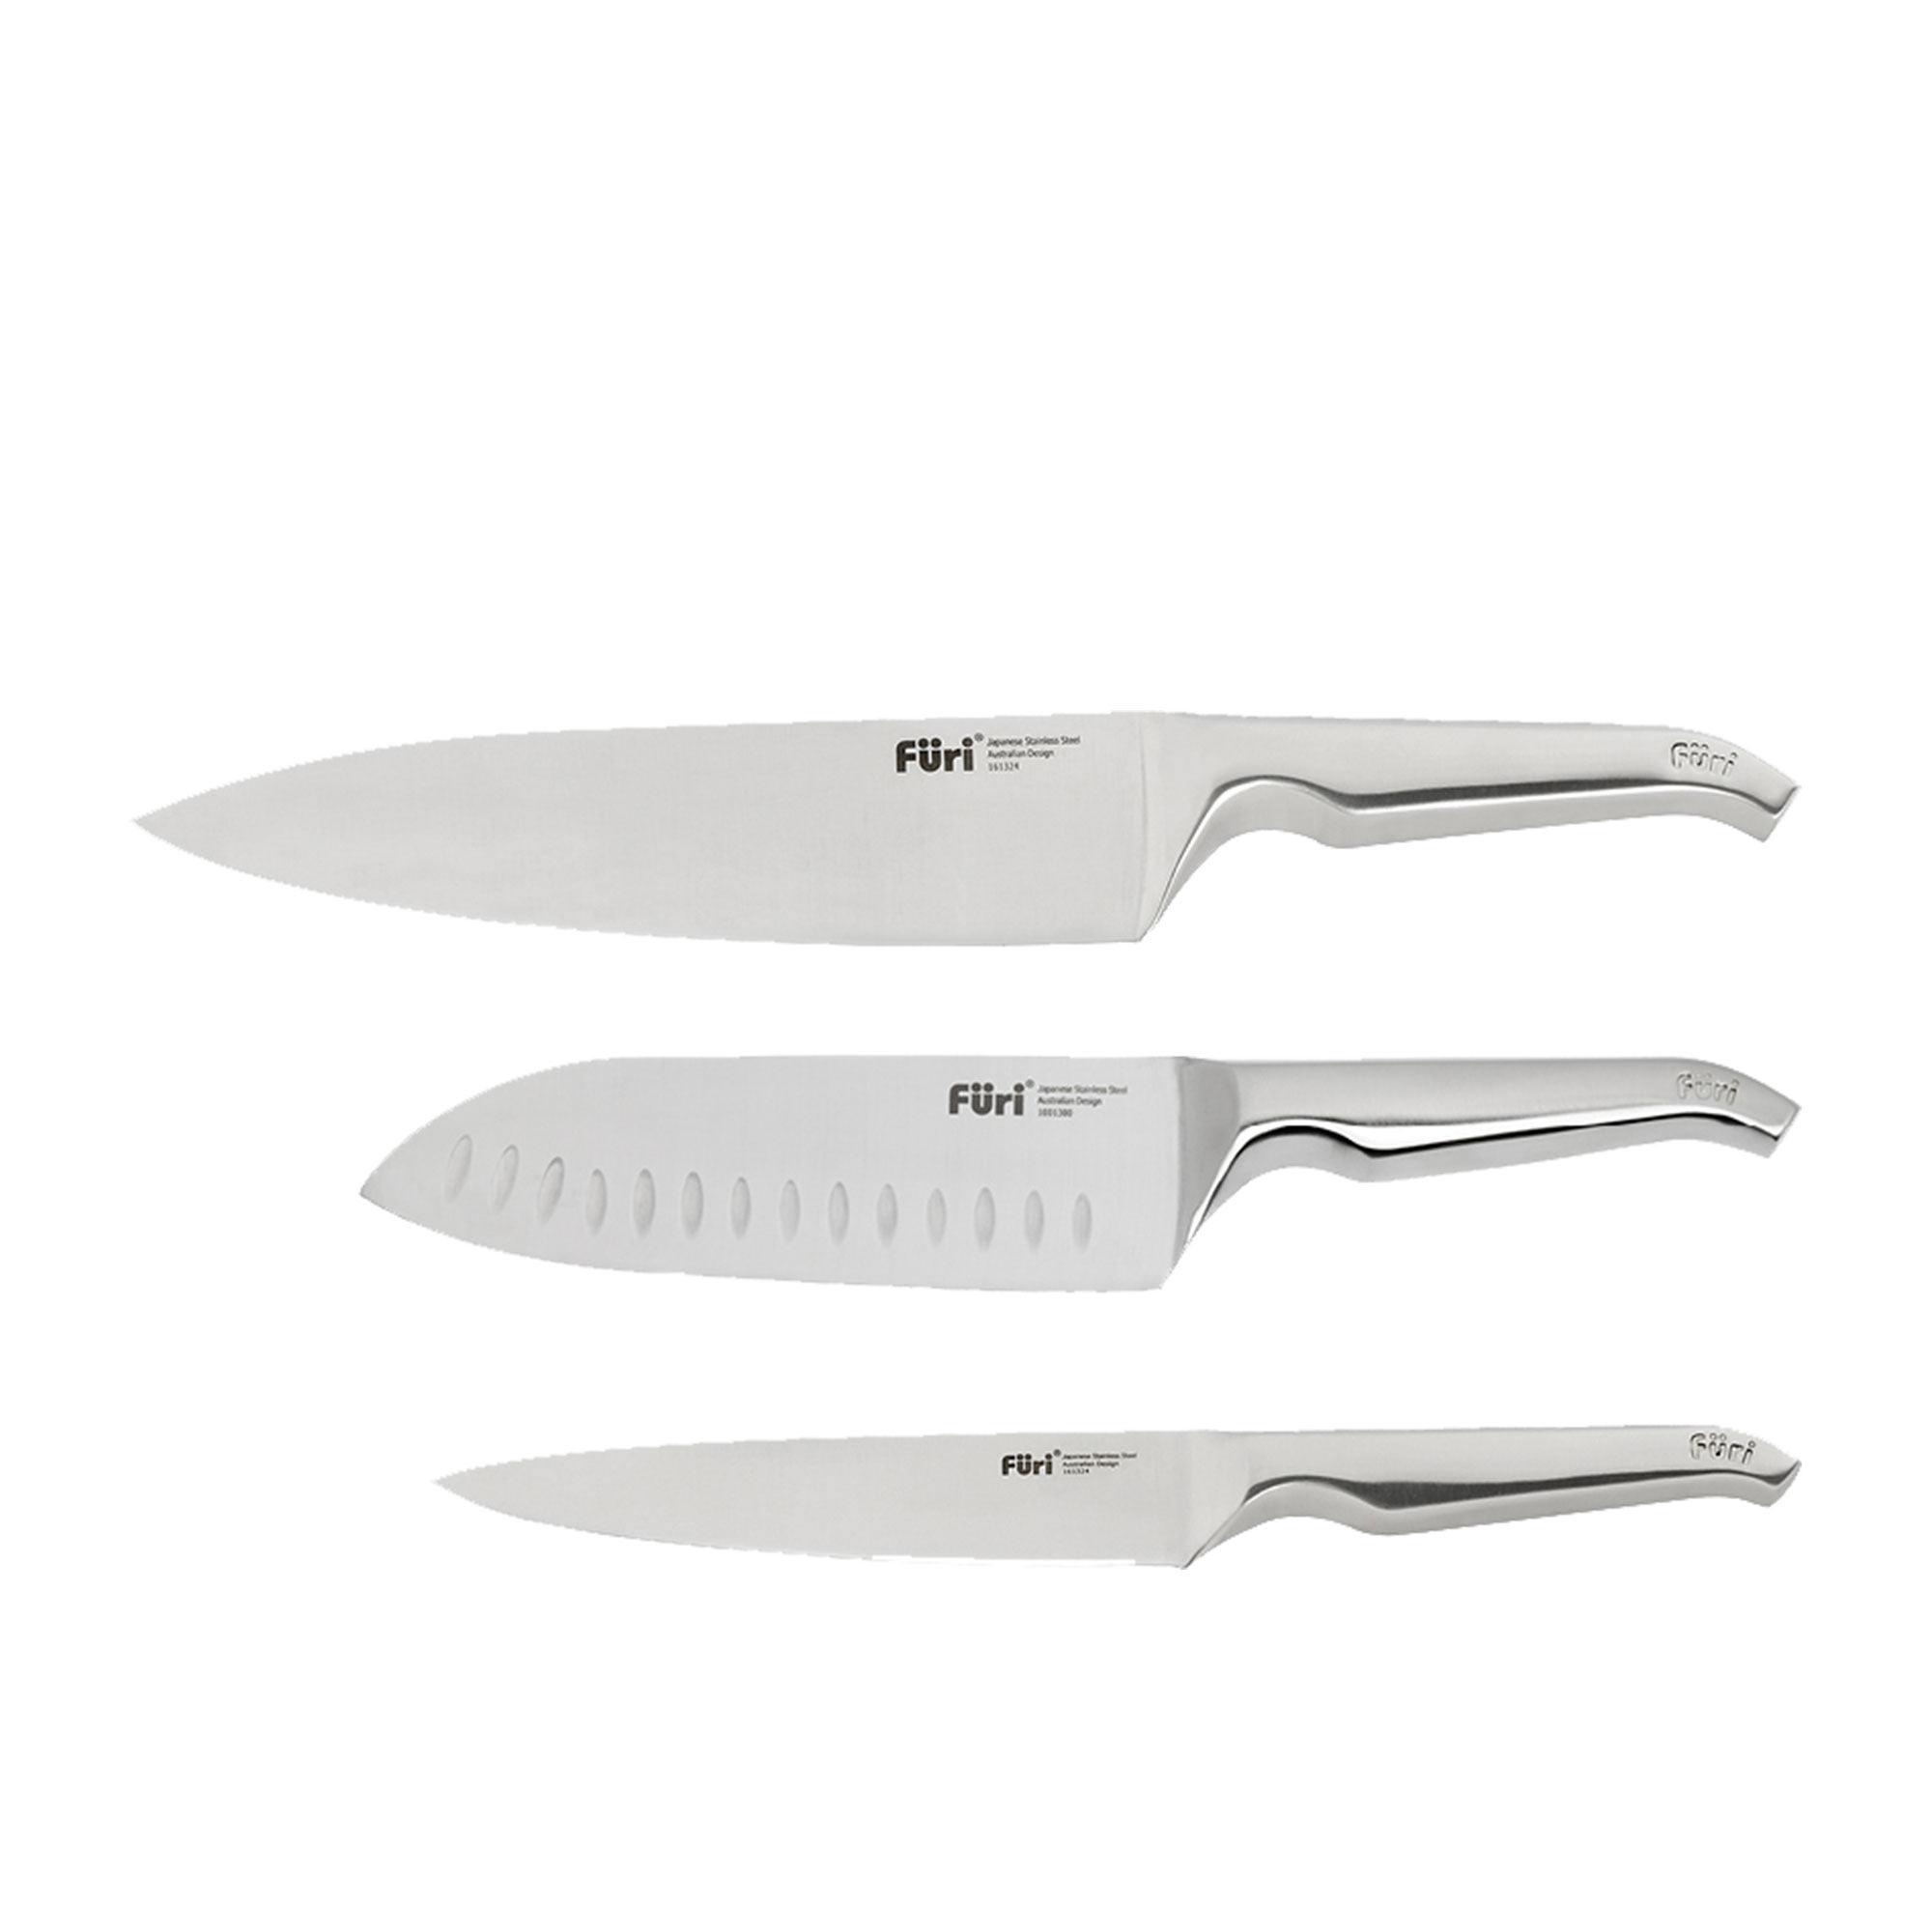 Furi Pro 3pc Knife Set Image 4